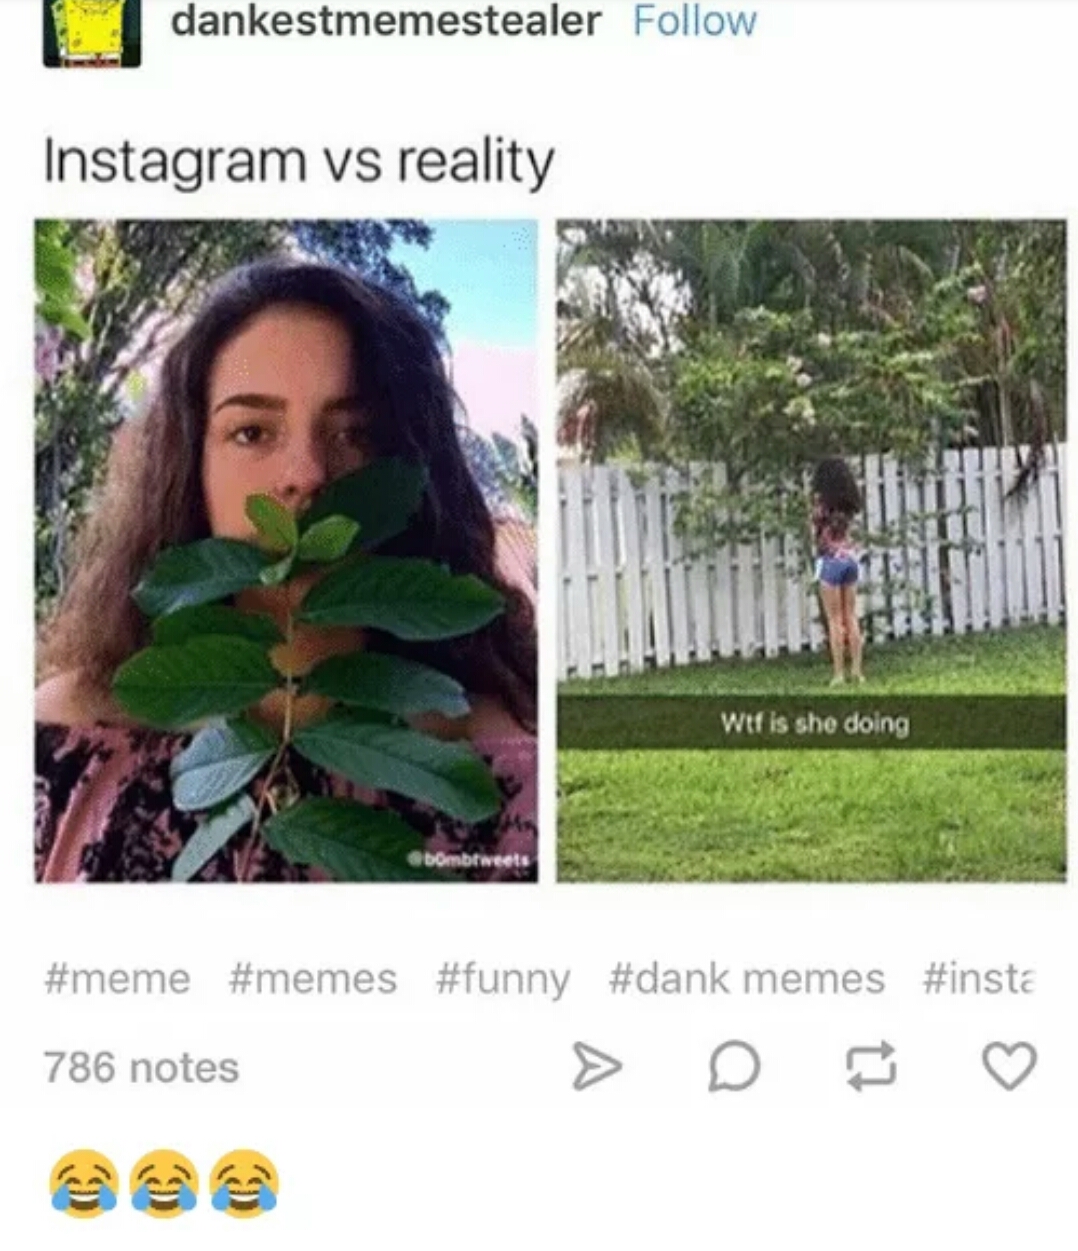 memes - instagram vs reality meme - dankestmemestealer Instagram vs reality Wtf is she doing memes 786 notes